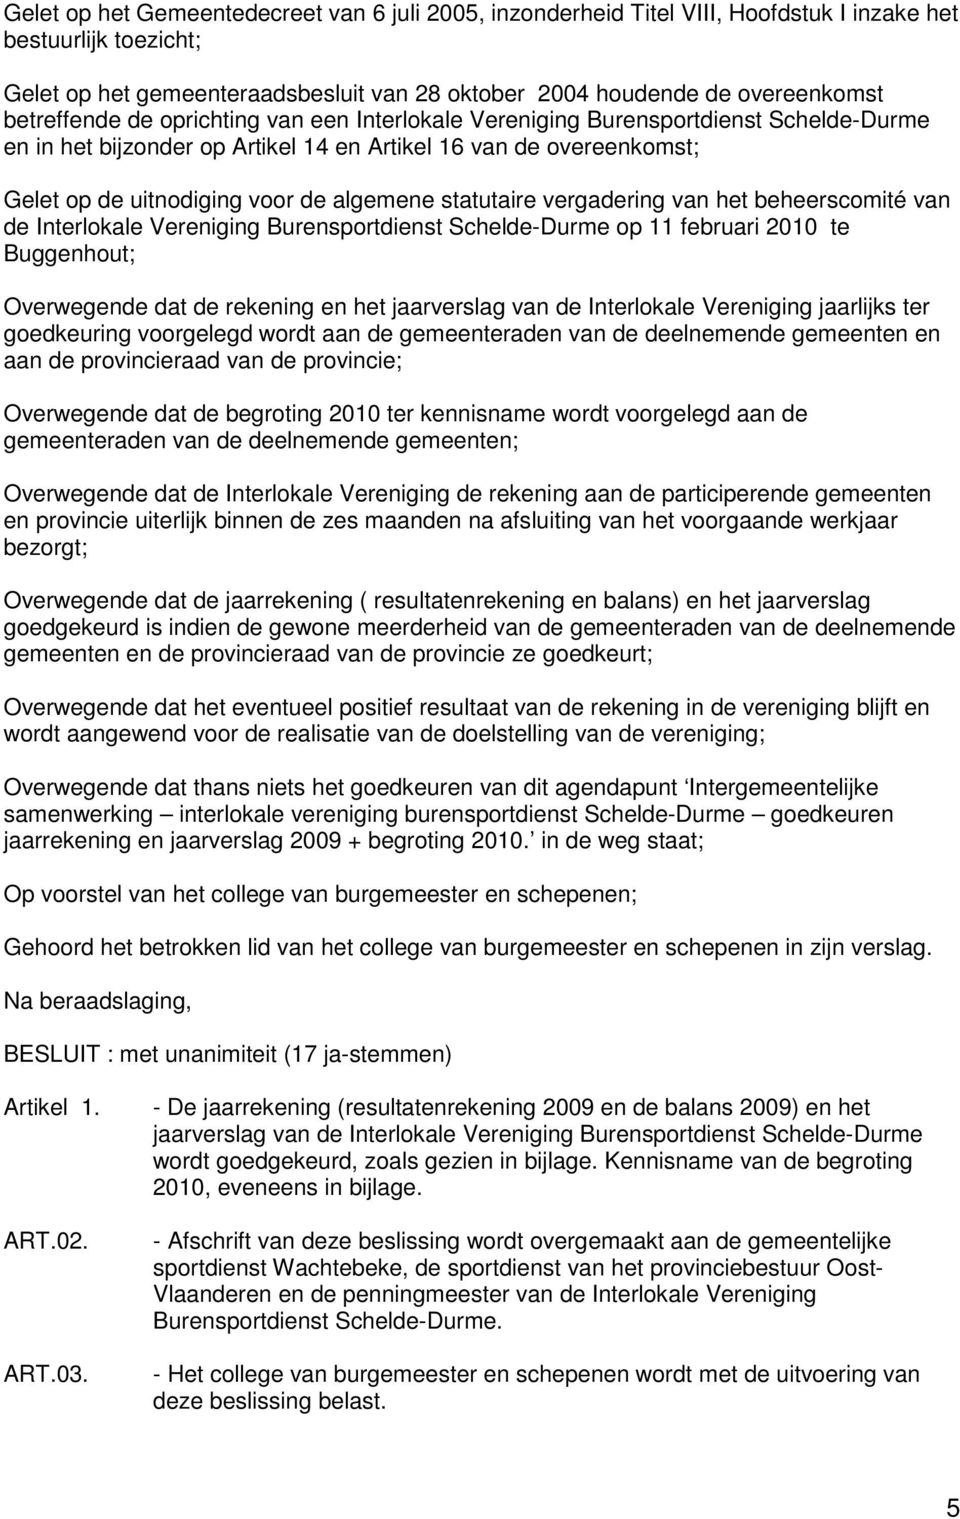 statutaire vergadering van het beheerscomité van de Interlokale Vereniging Burensportdienst Schelde-Durme op 11 februari 2010 te Buggenhout; Overwegende dat de rekening en het jaarverslag van de